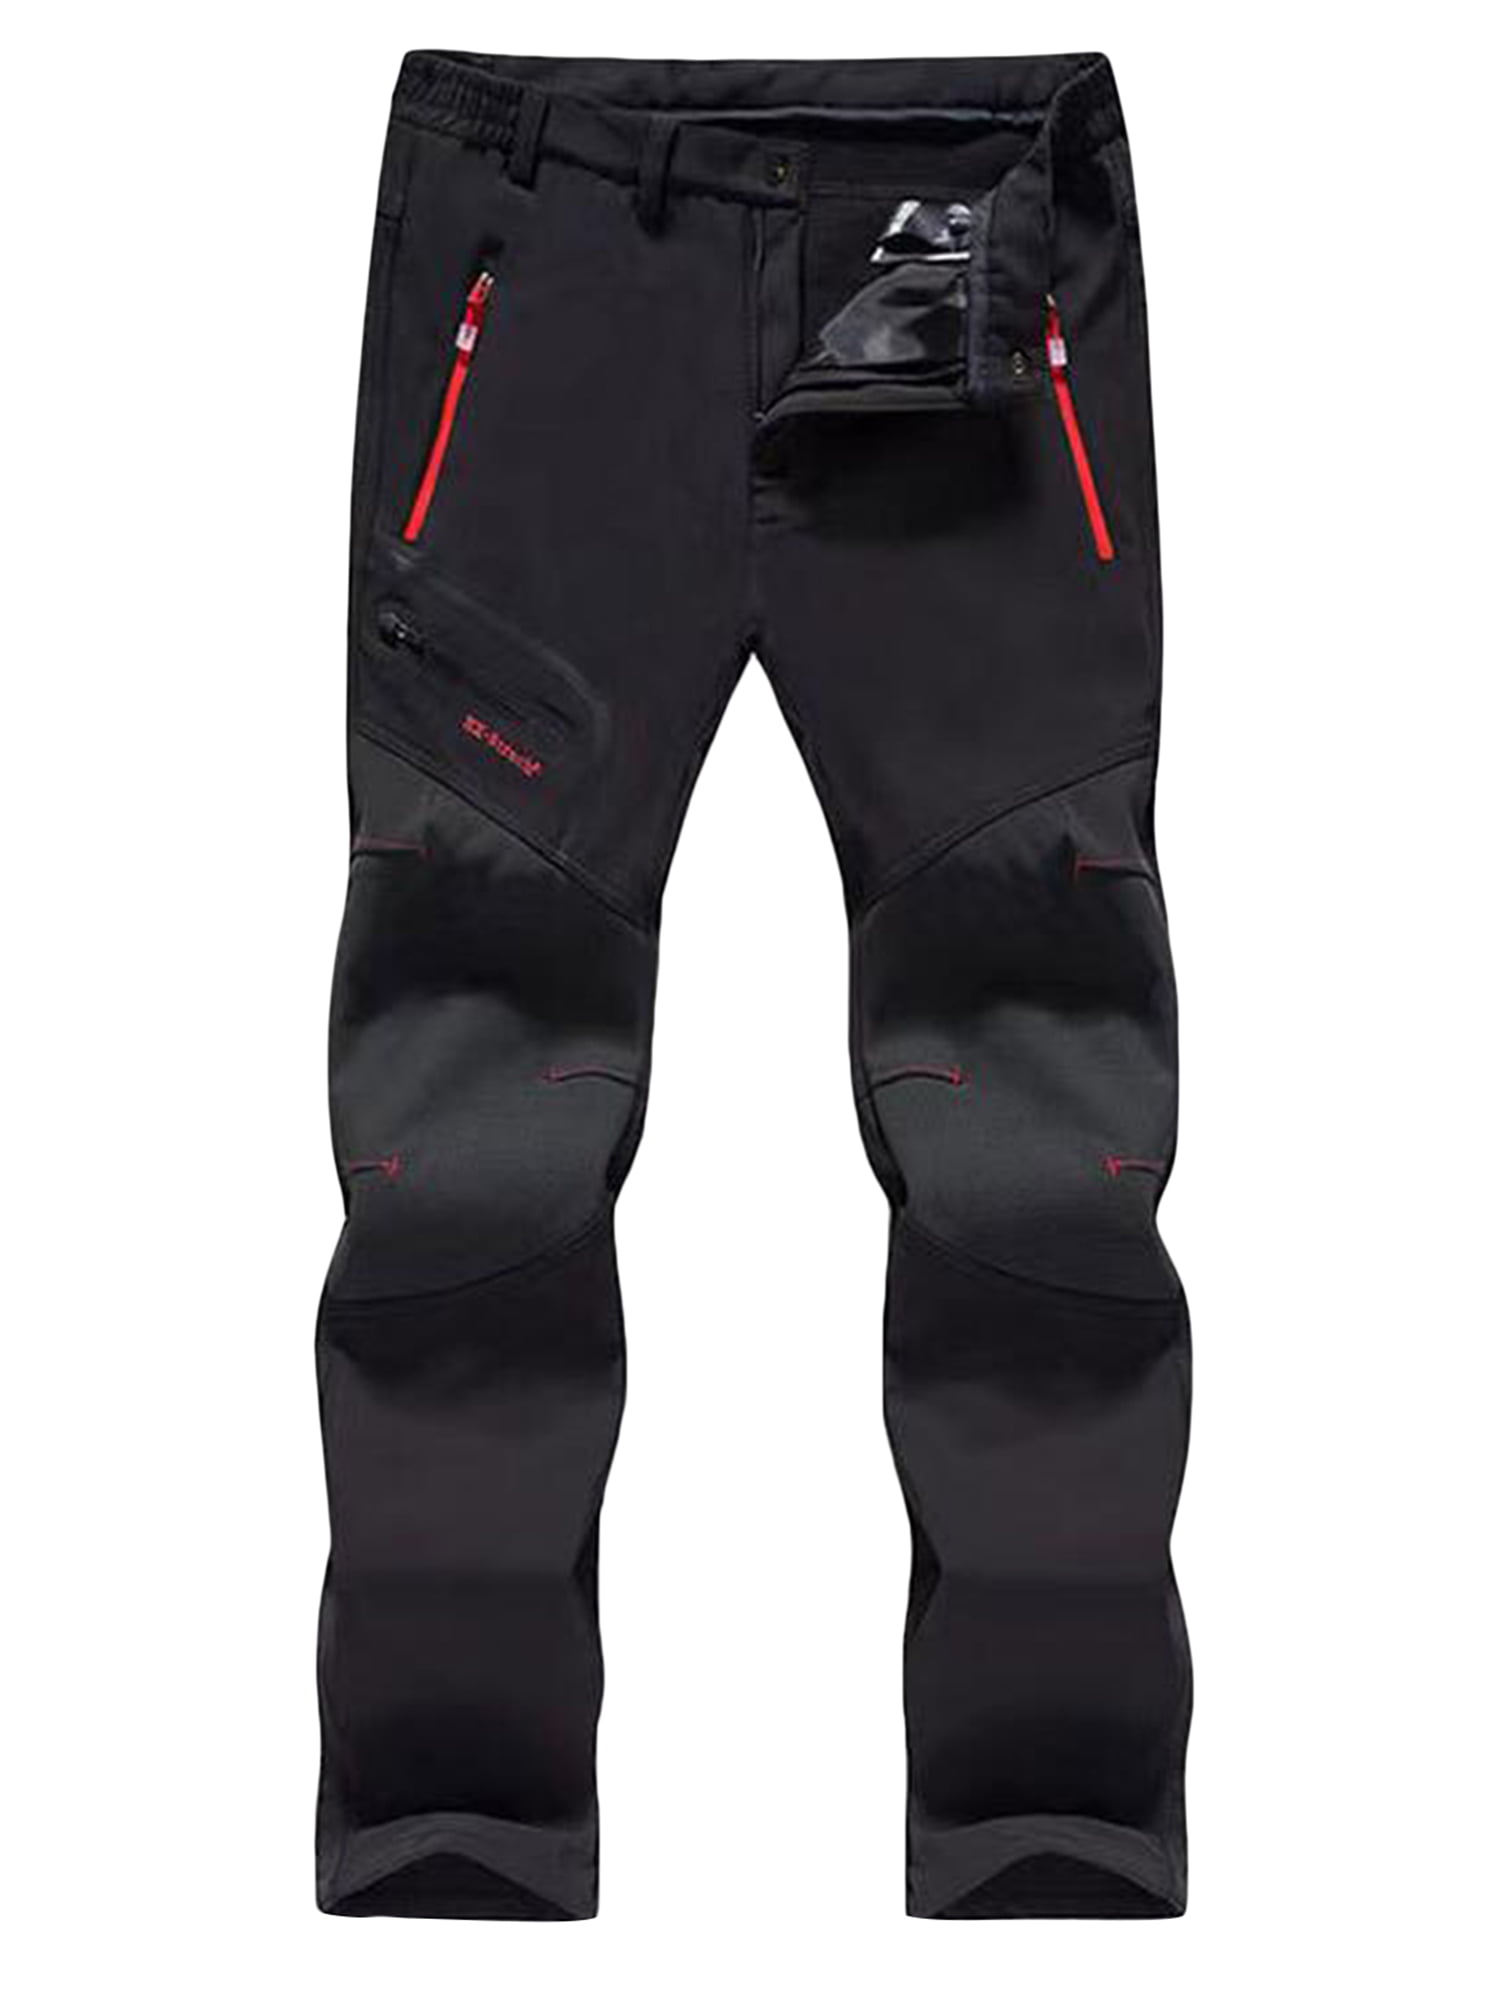 Men's Tactical Hiking Pants Waterproof Reinforced Knees Outdoor Work Cargo Pants 